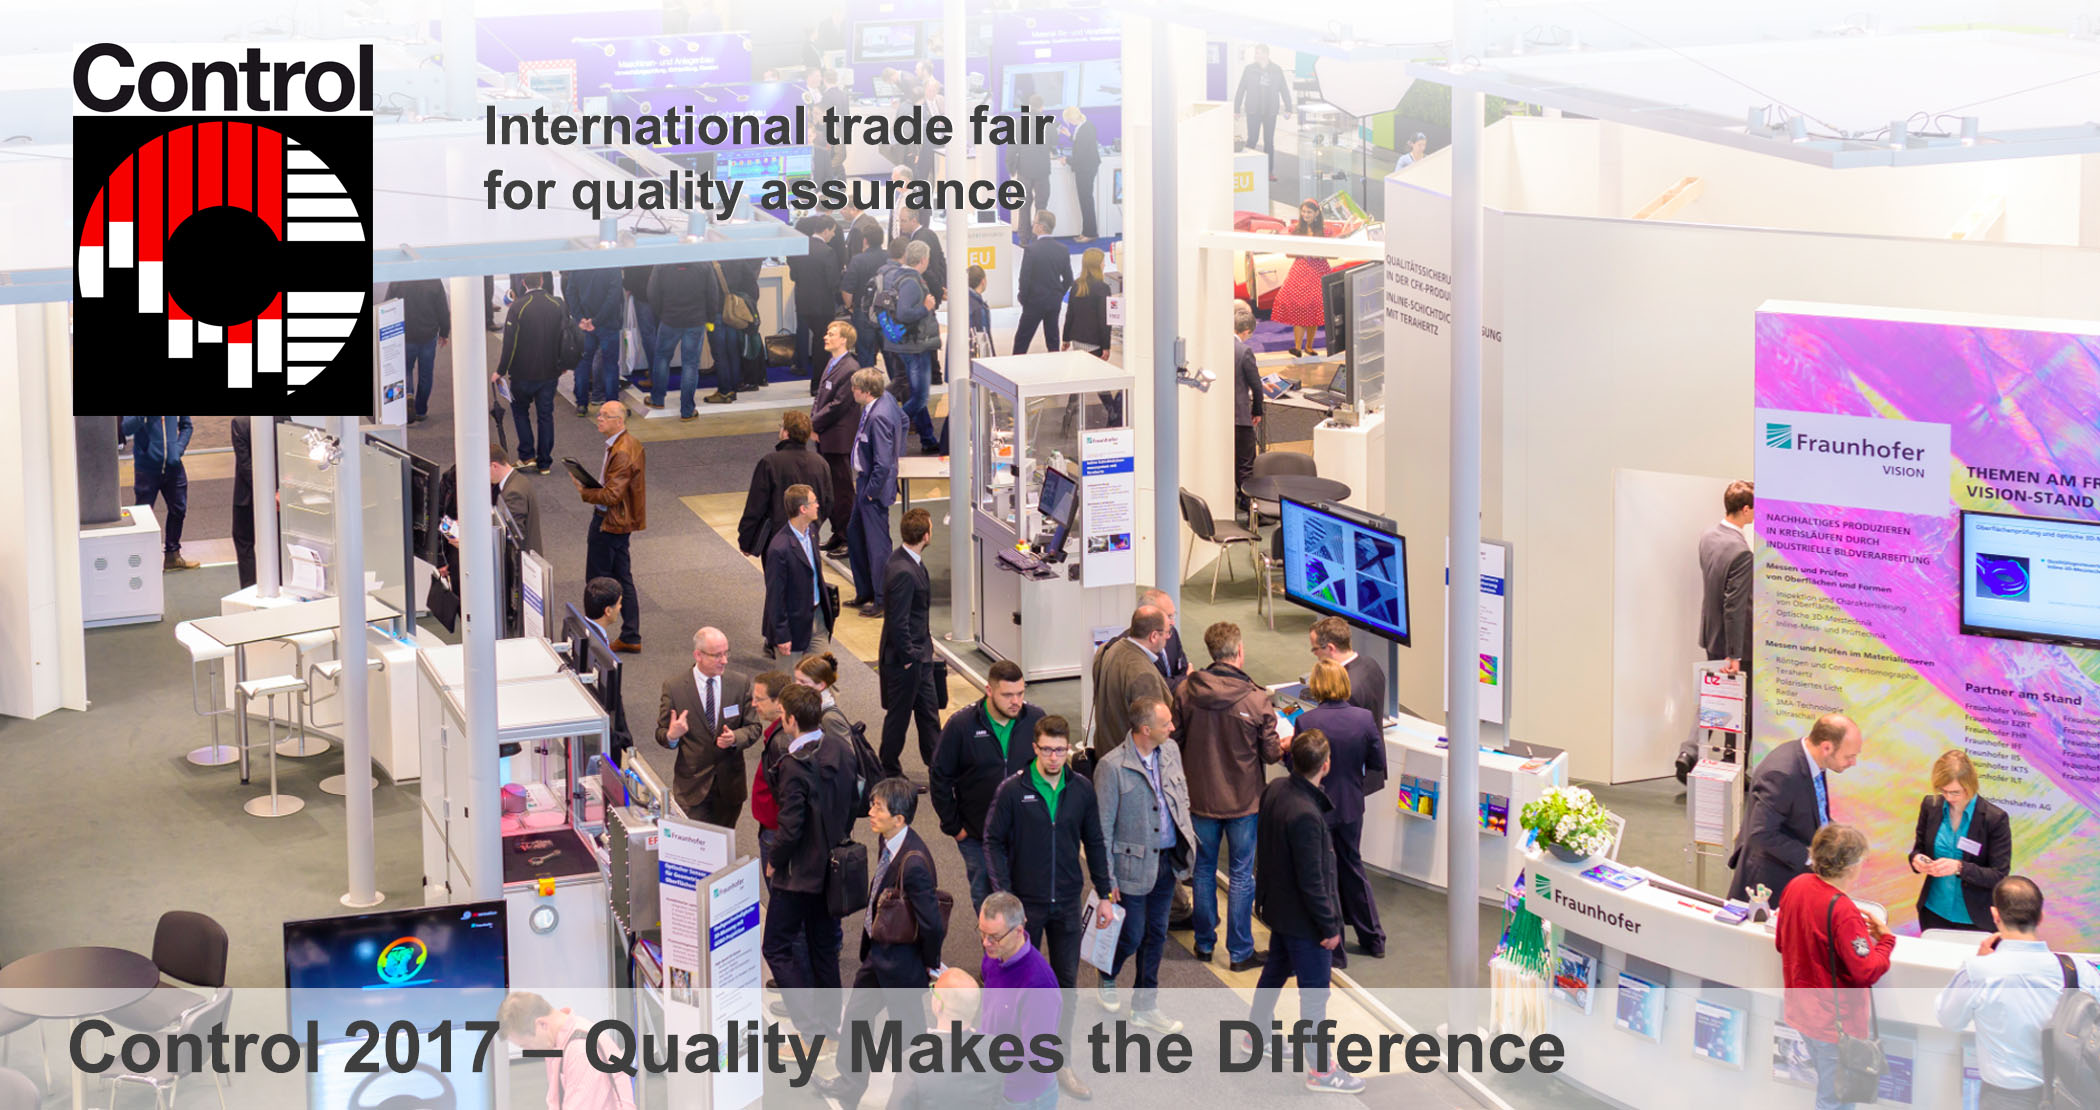 Control 2017, Control international trade fair for quality assurance